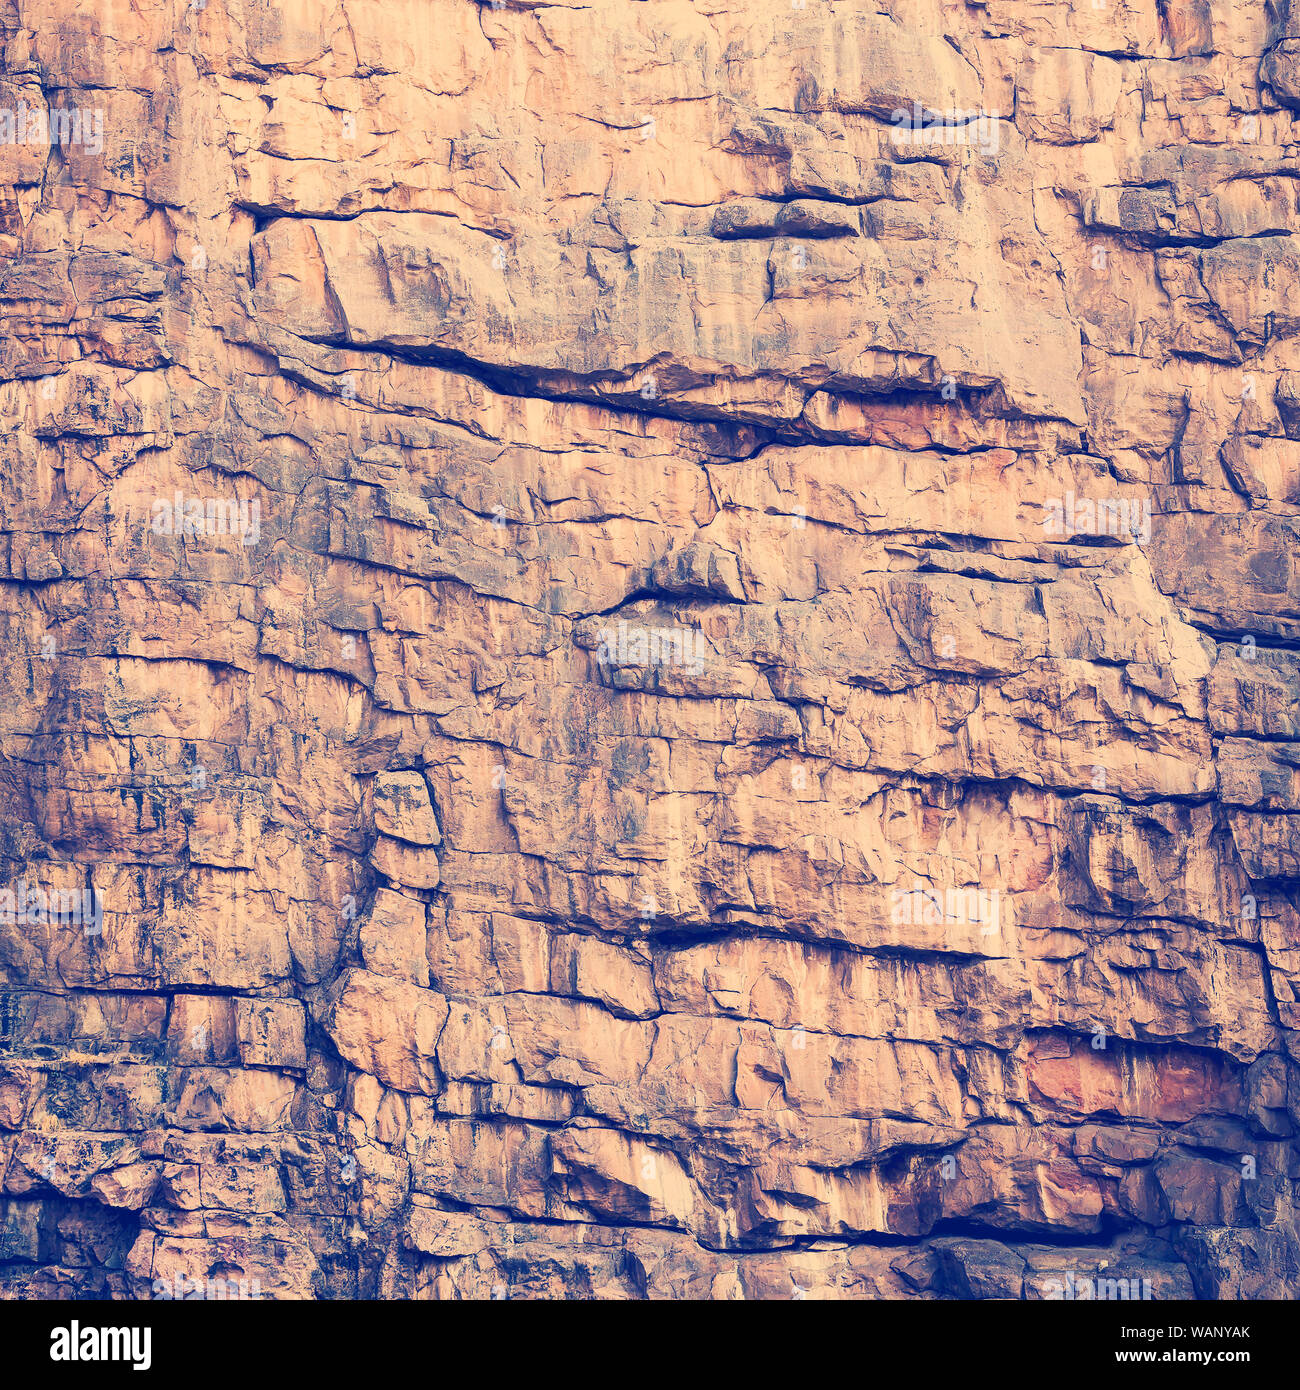 Roccia texture di grandi scogliere rocciose con retro Instagram stile effetto filtro Foto Stock